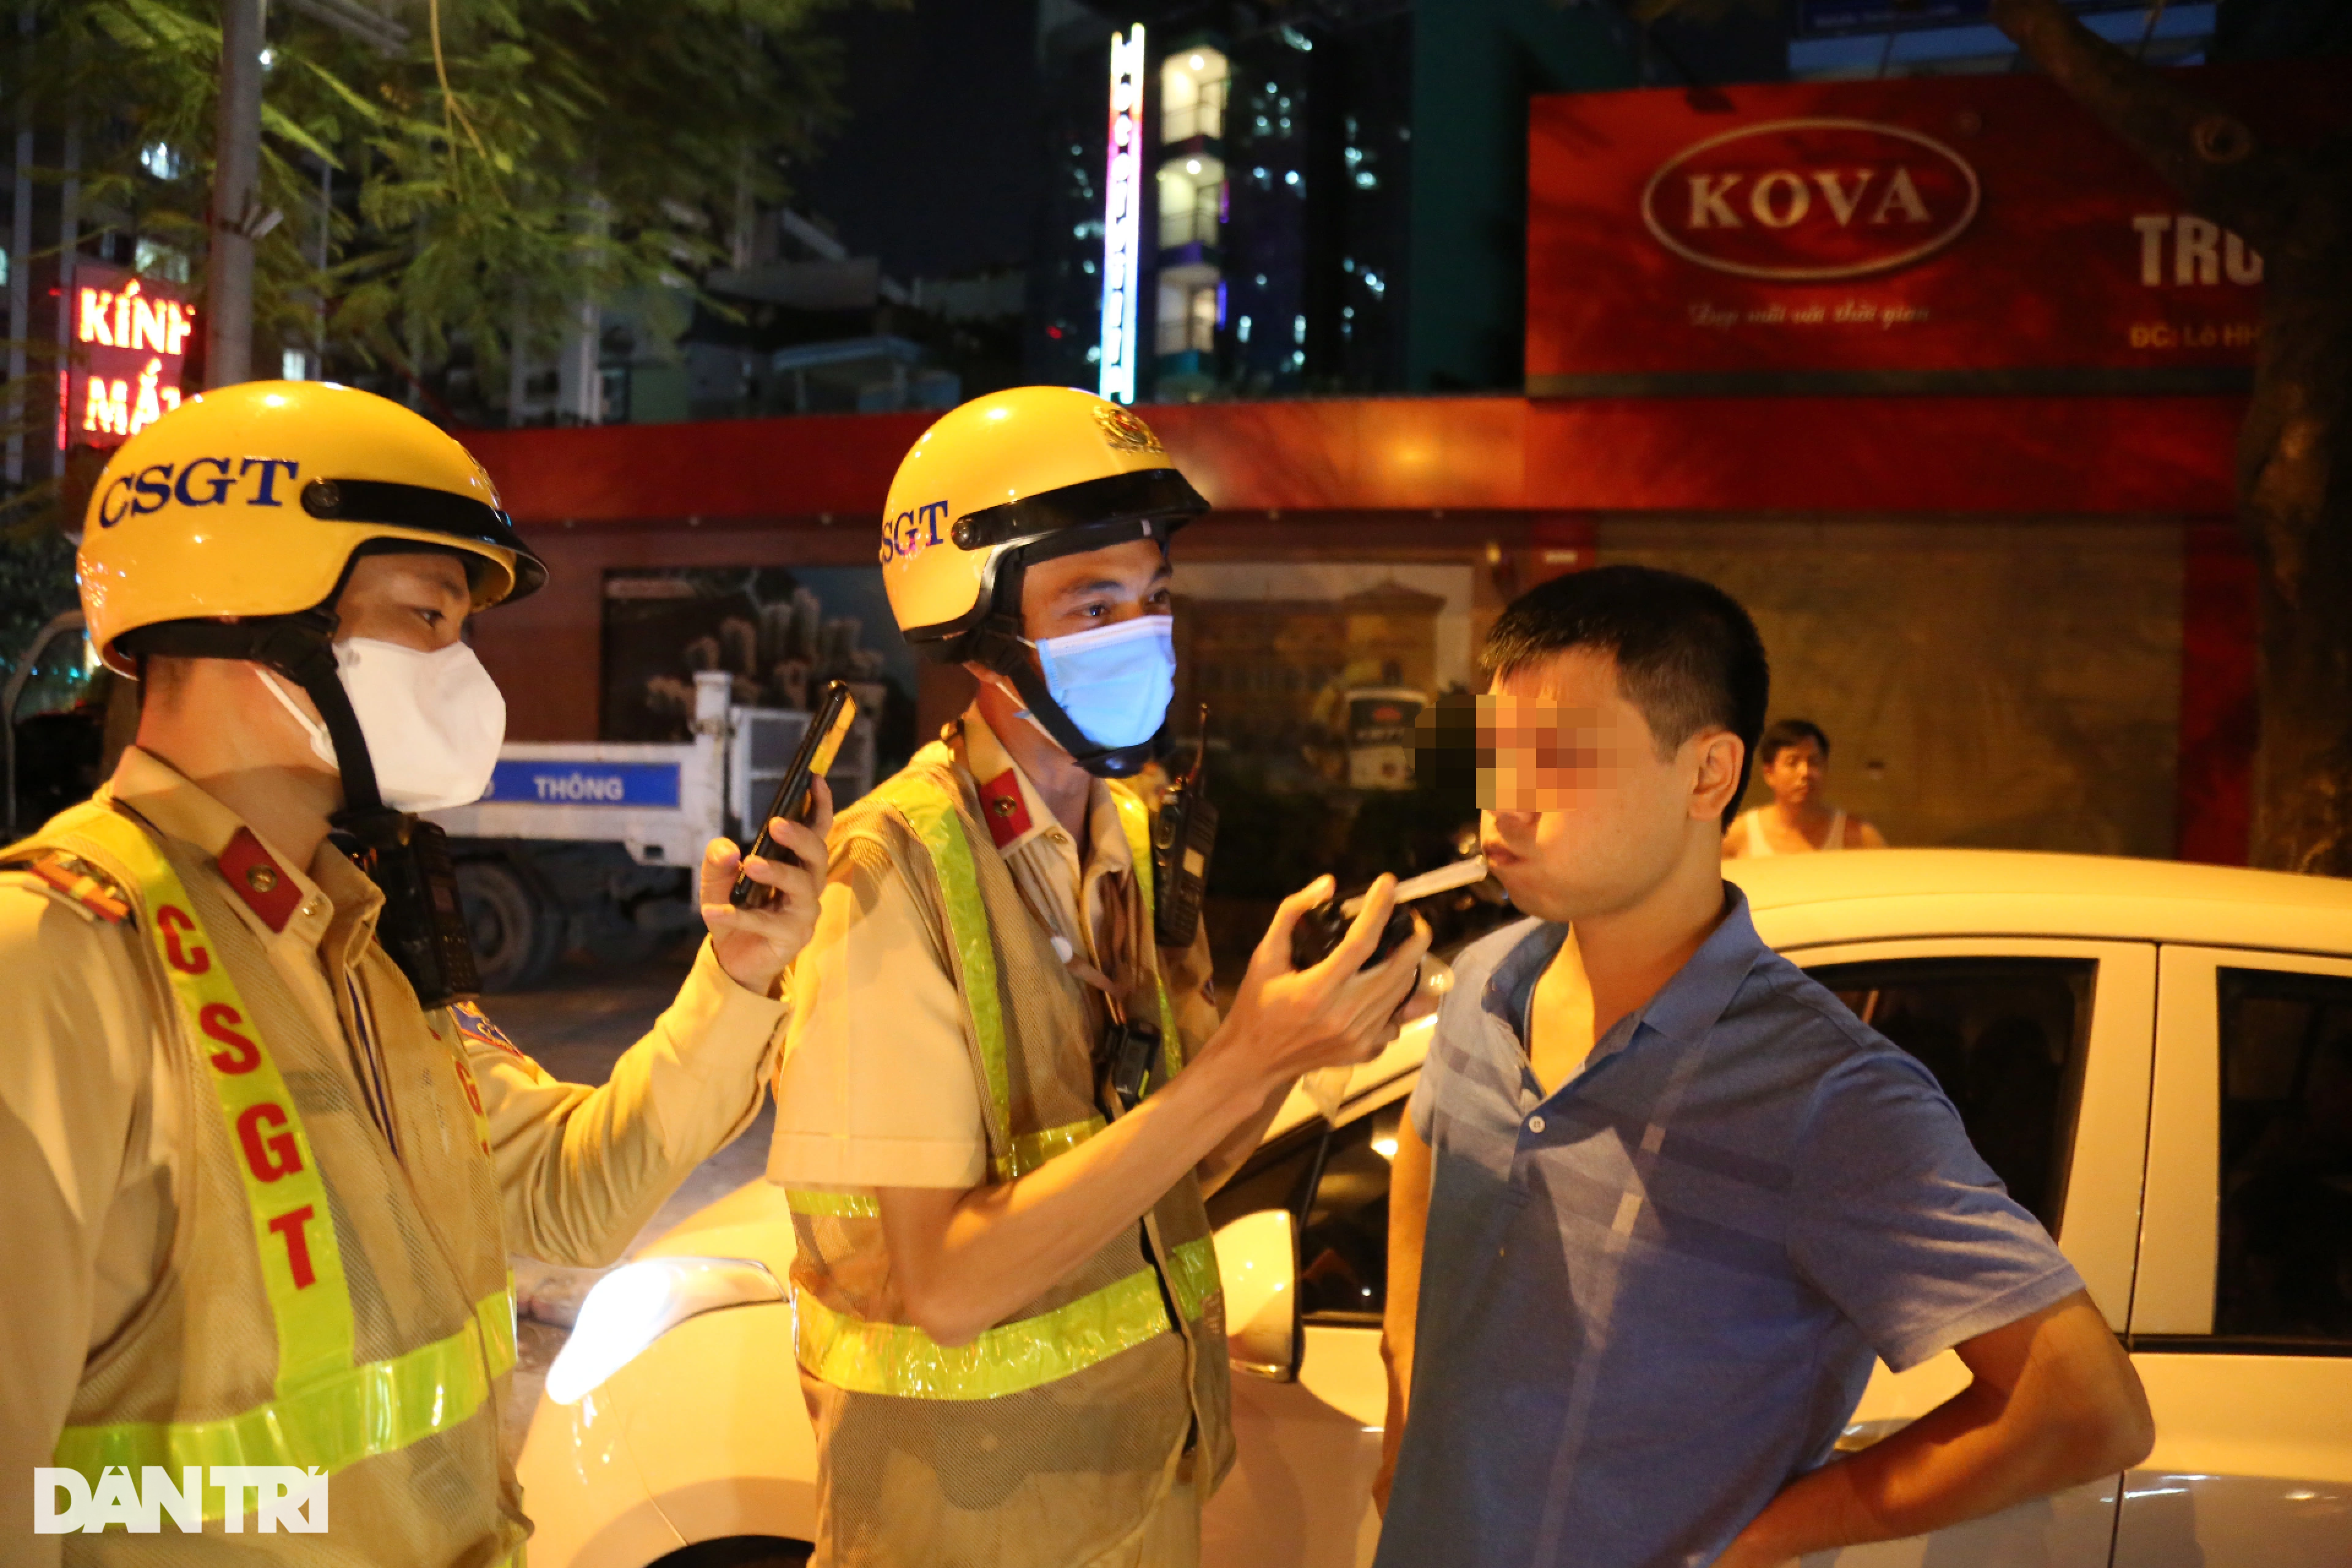 Hà Nội: CSGT hóa trang gần quán nhậu, xử lý ma men lái ô tô - 12